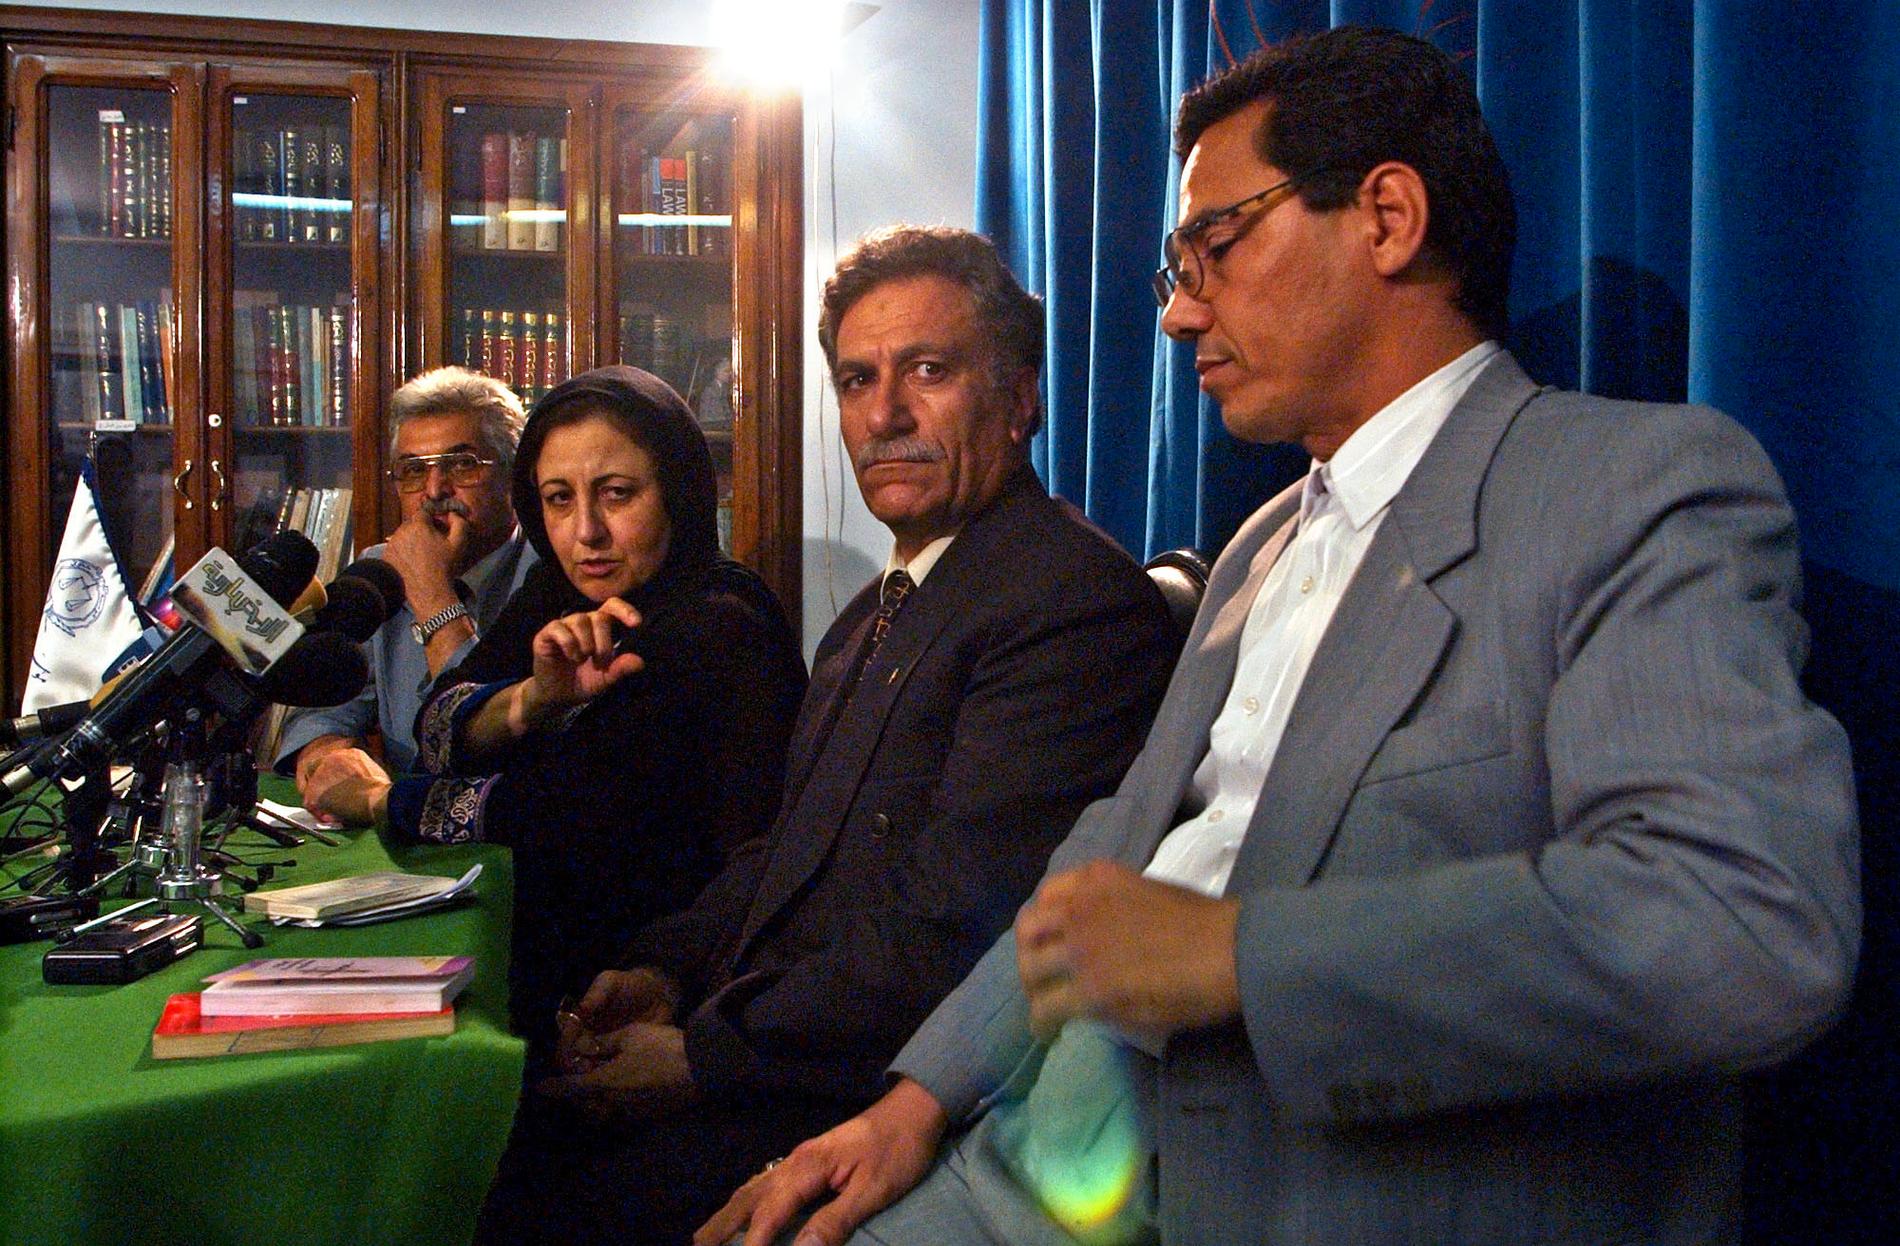 Den iranske människorättsadvokaten Abdolfattah Soltani (tvåa från höger) och Nobelpristagaren Shirin Ebadi, andra från vänster, på en bild från 2004.